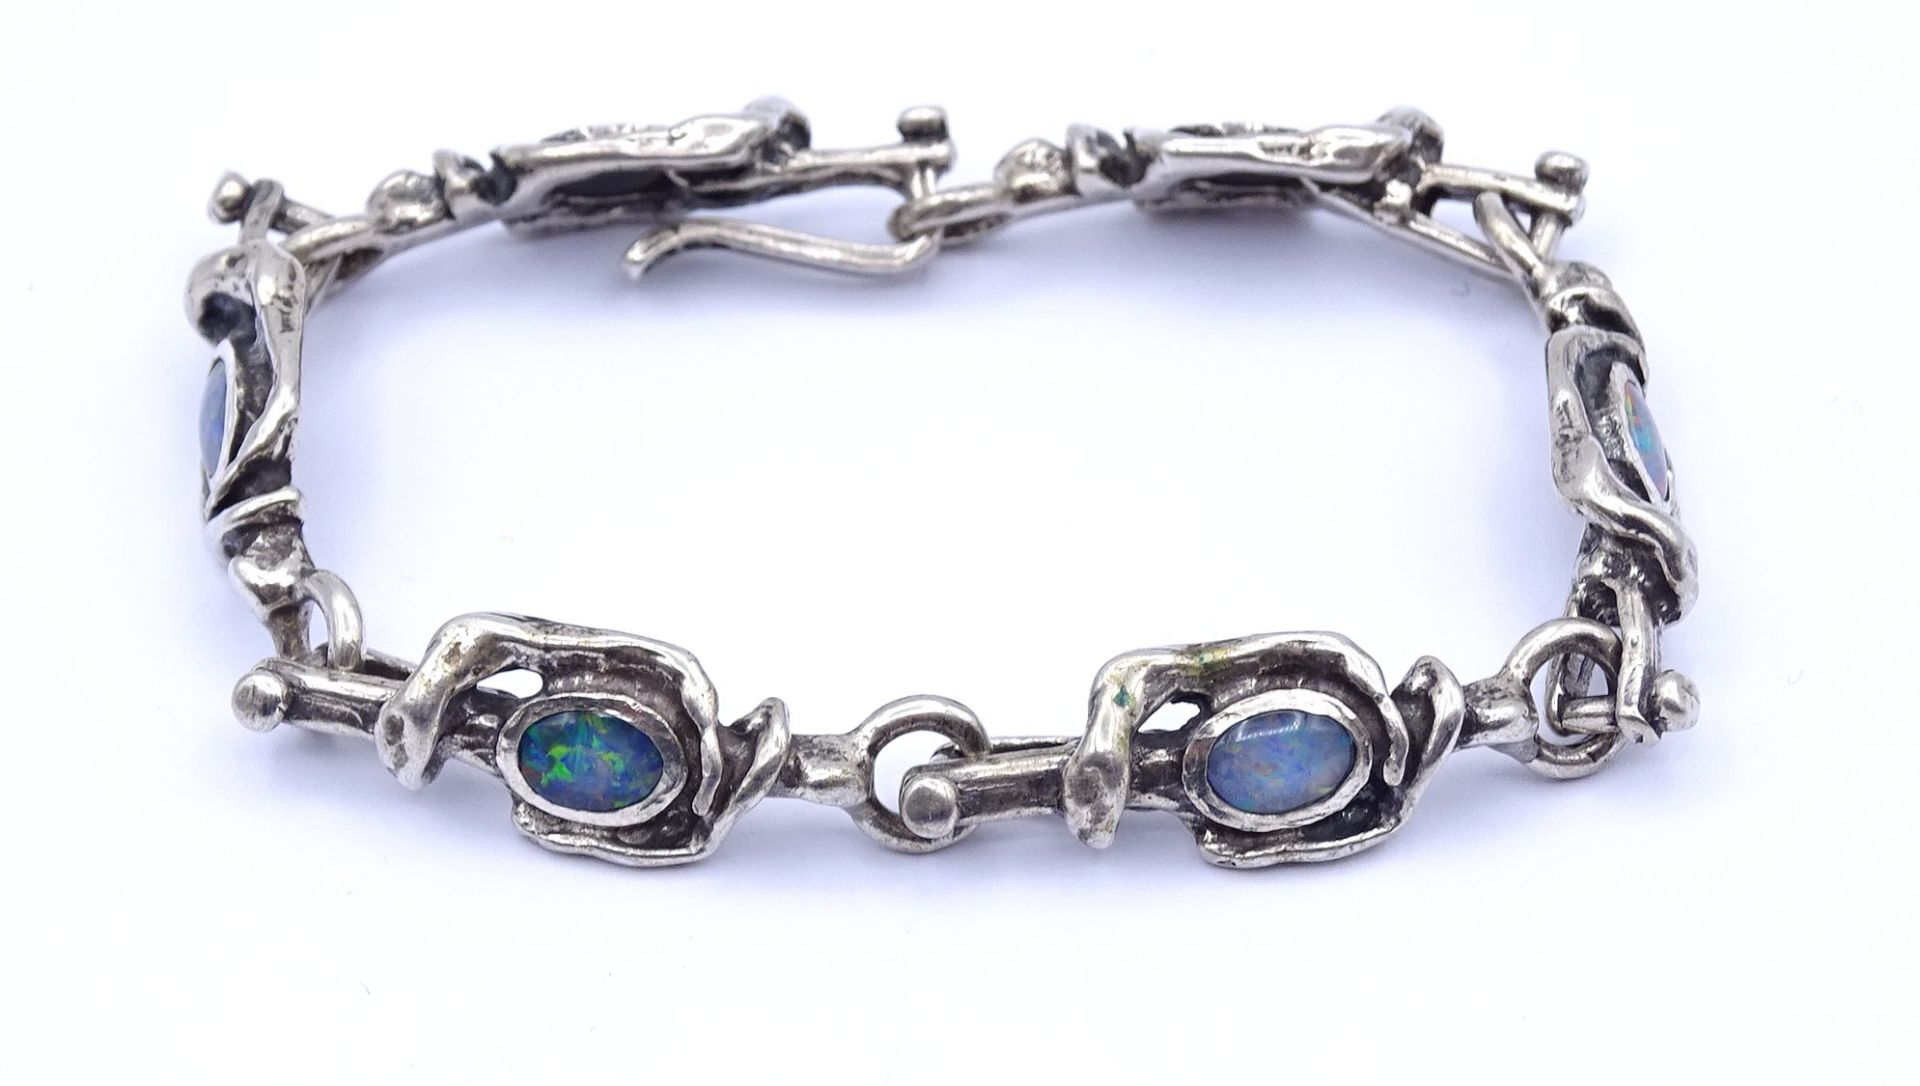 Armband mit 6 Opale, Silber 835/000, L. 19cm, 26g. - Bild 2 aus 4